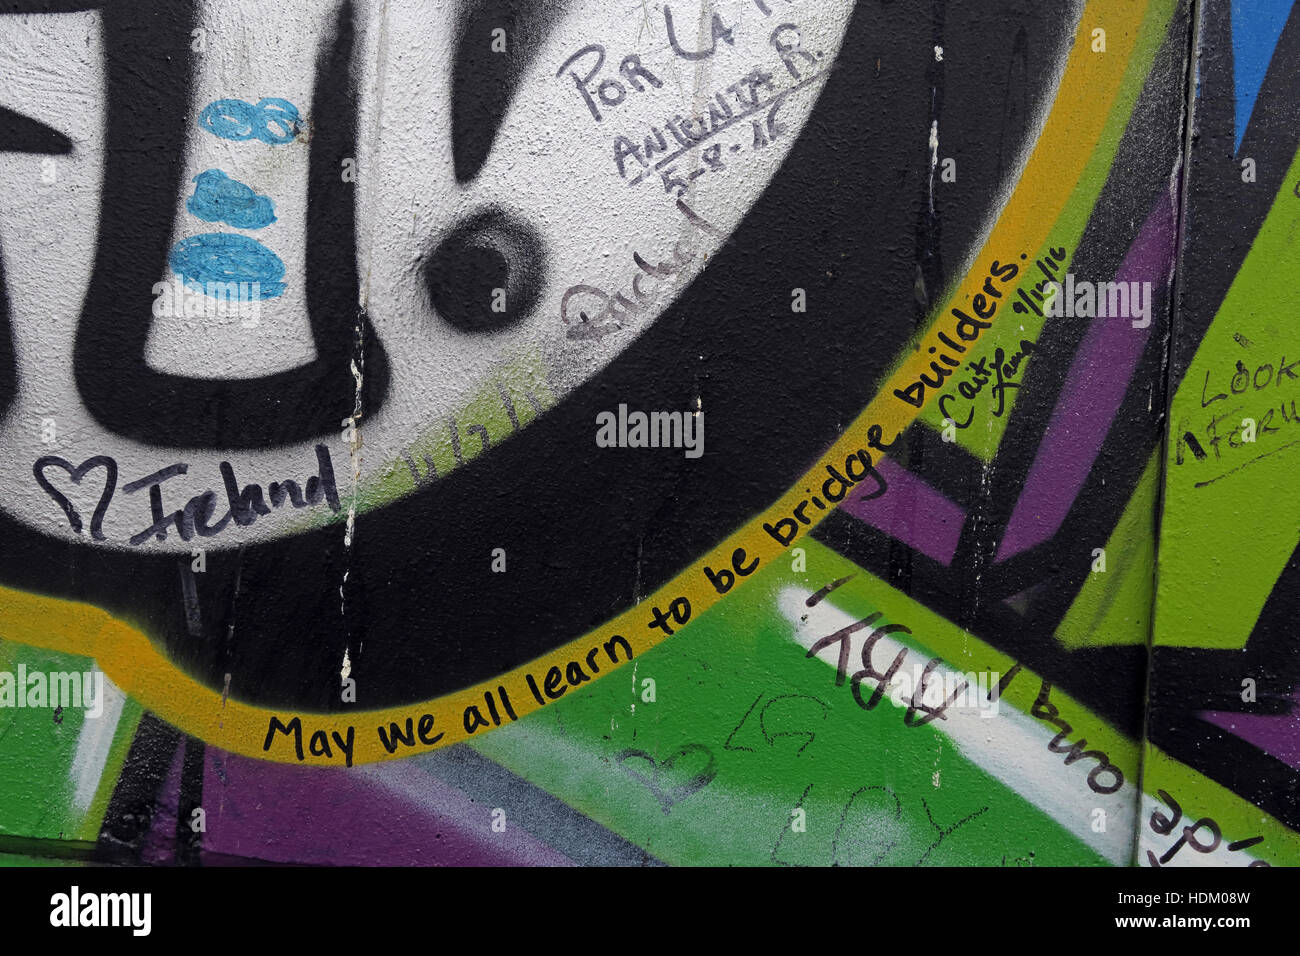 Puissions-nous tous apprendre à être les bâtisseurs de ponts - Belfast International Peace Wall Graffiti,Cupar Way,l'Ouest de Belfast,NI,UK Banque D'Images